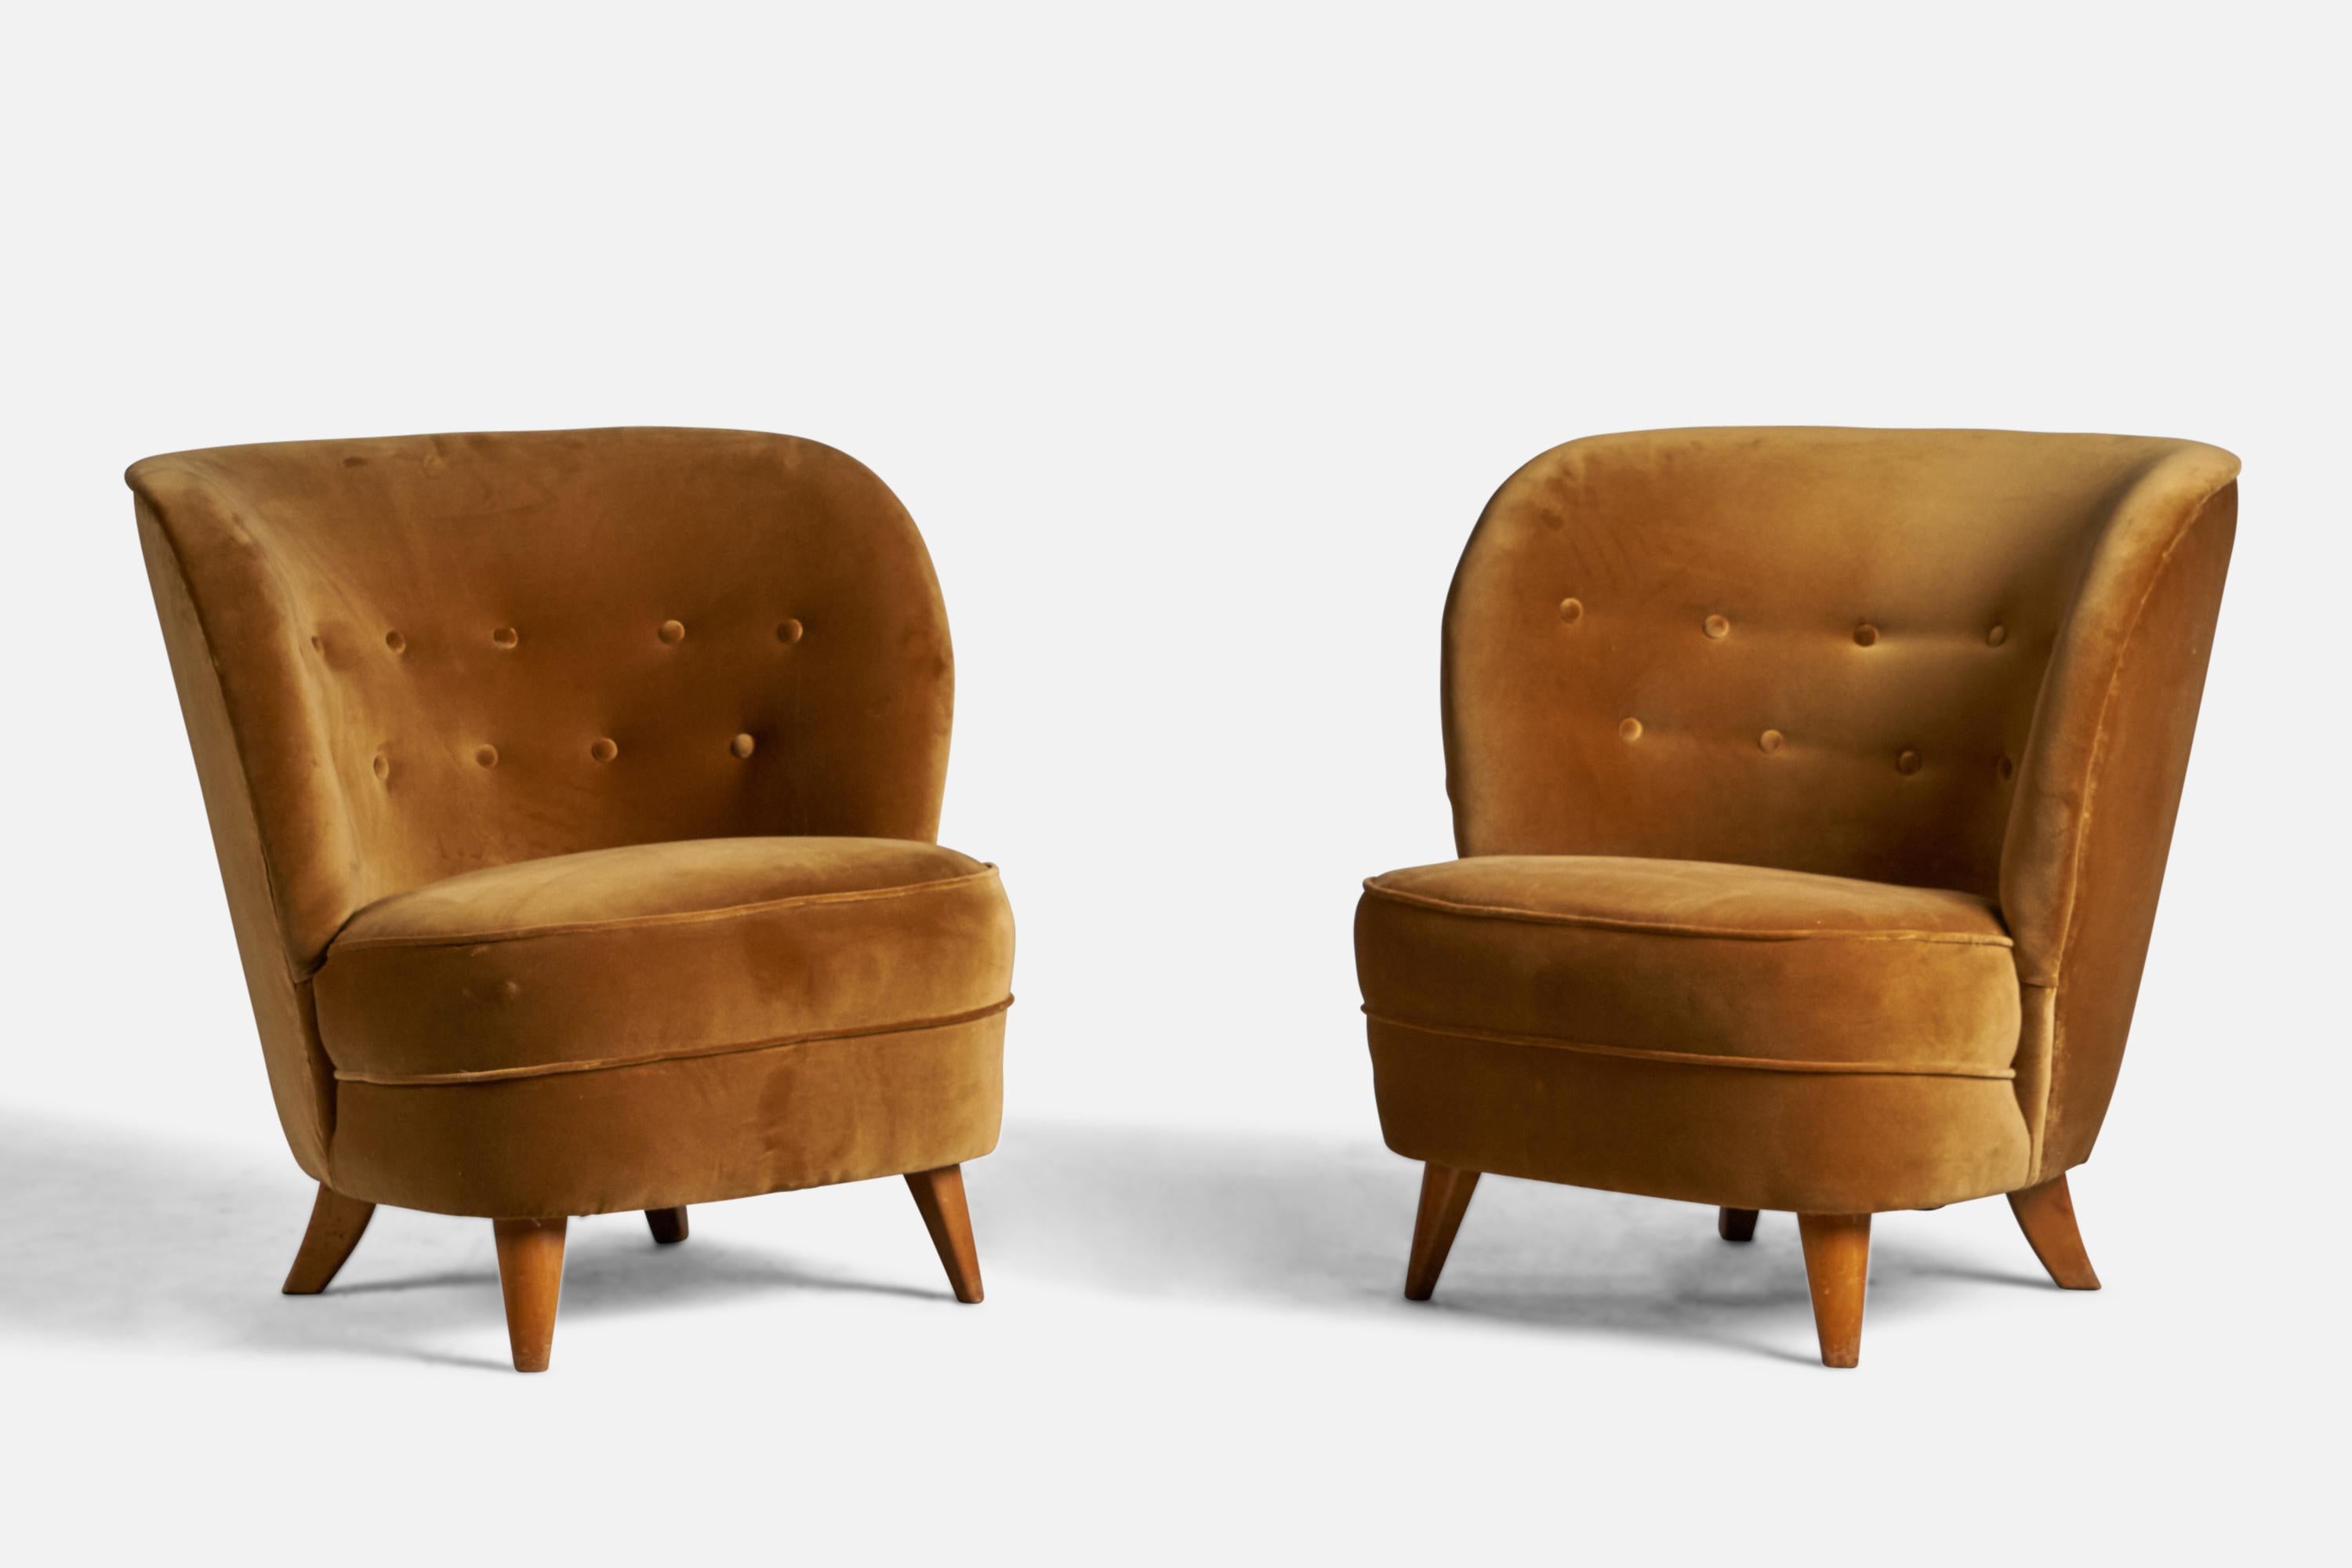 Paire de chaises de salon ou de pantoufles en bois et velours beige, conçues par Tor Wolfenstein et produites par Ditzingers, Suède, années 1940.

Les paires du même modèle vendues précédemment portent la plaque métallique du fabricant.

Hauteur